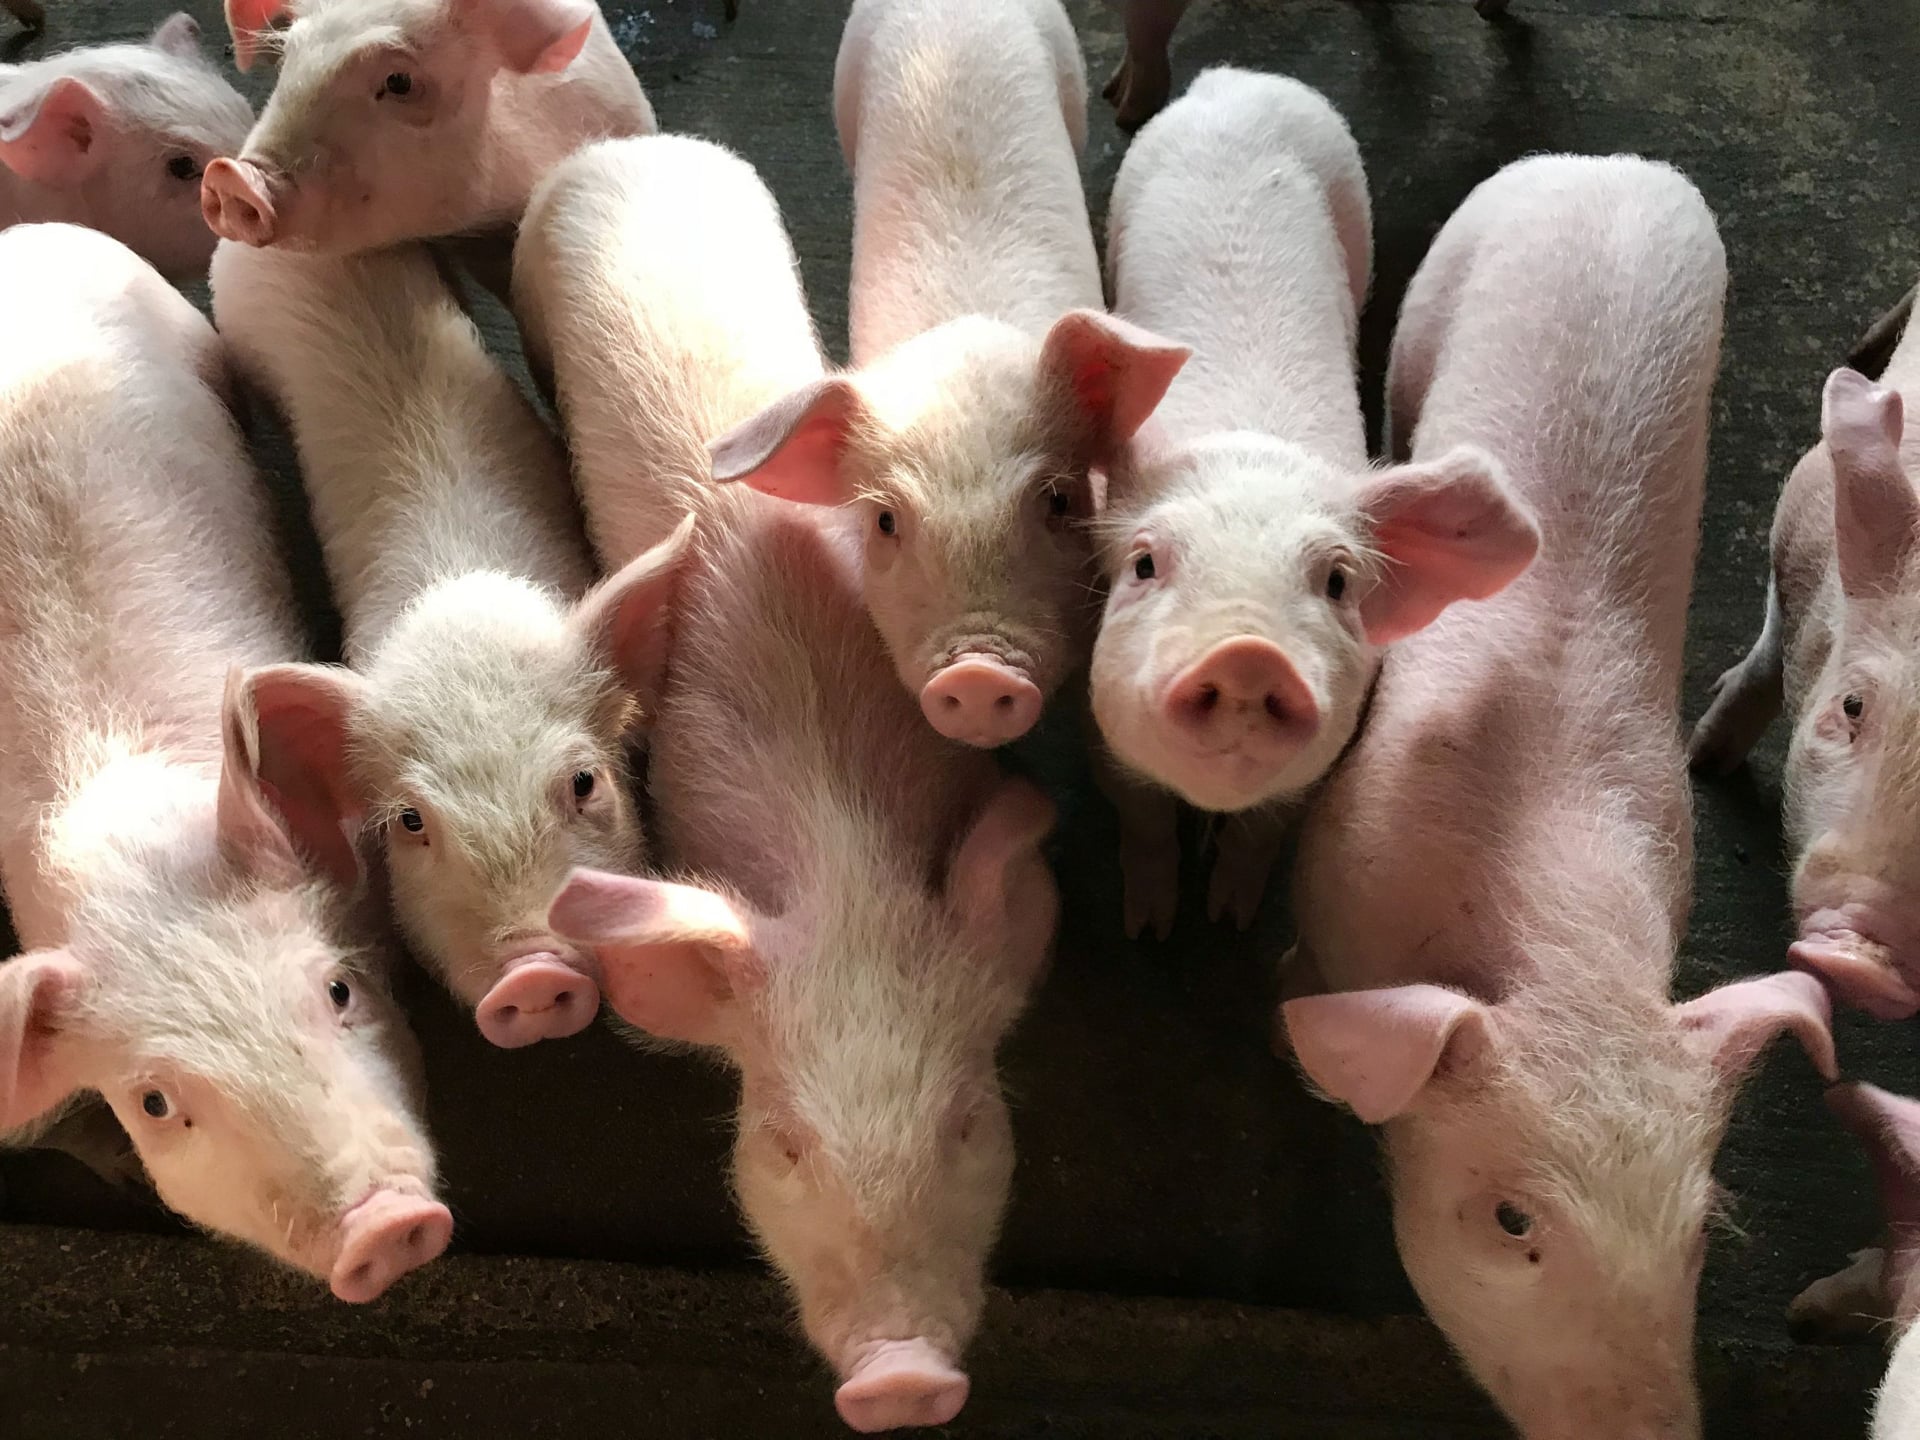 Ministrul Barbu schimbă legea cu privire la porcii crescuți în gospodării